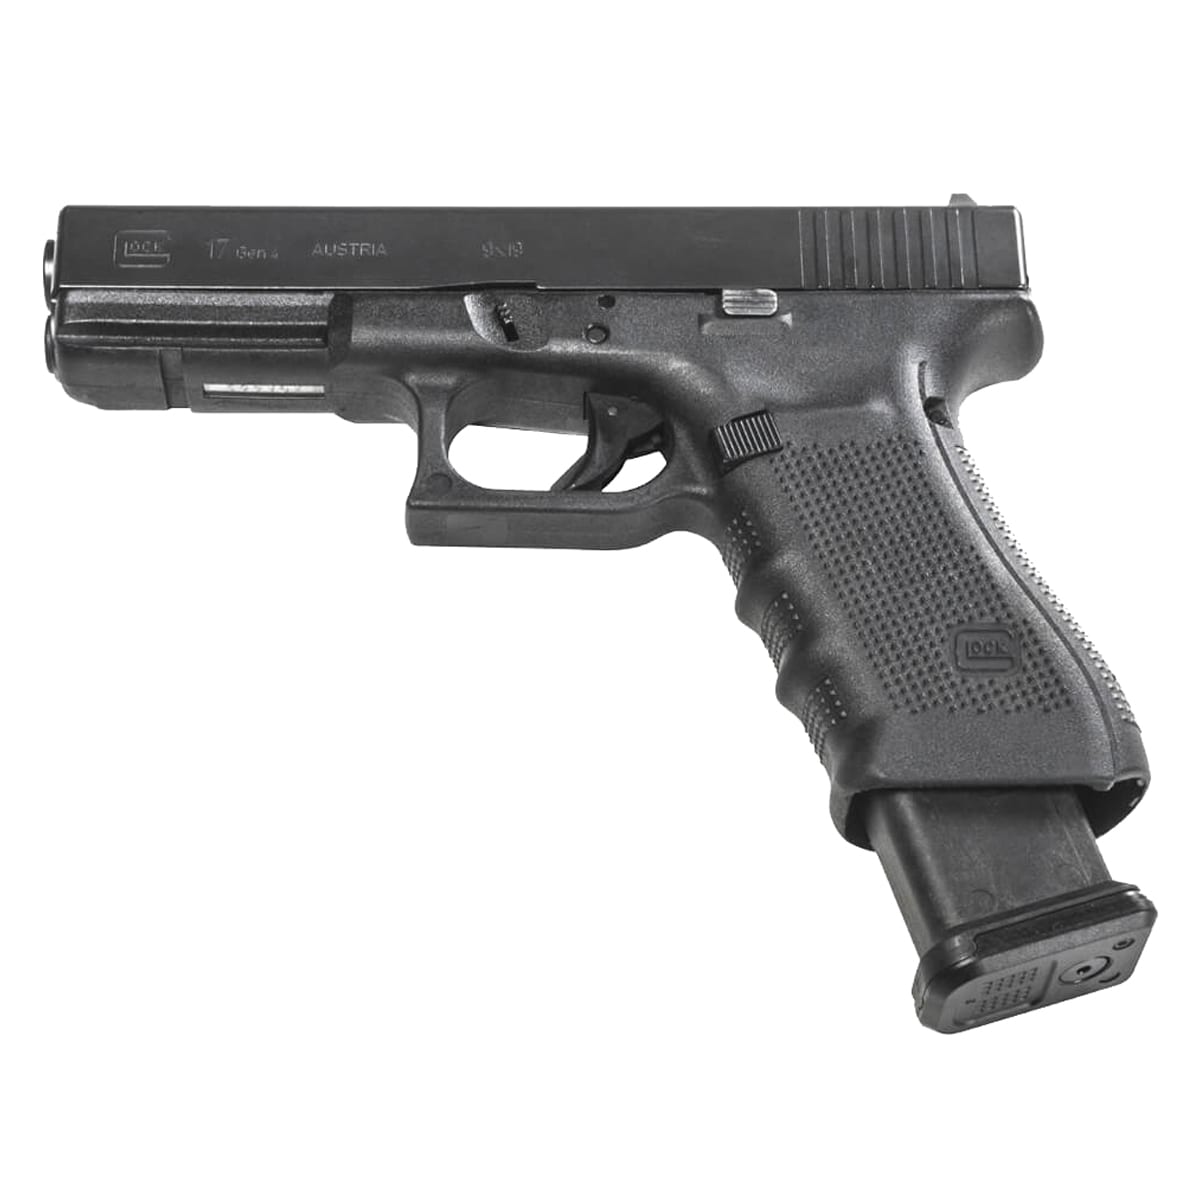 Magazynek 21 nabojowy Magpul PMAG 21 GL9 kal. 9x19 mm do pistoletów Glock - Black